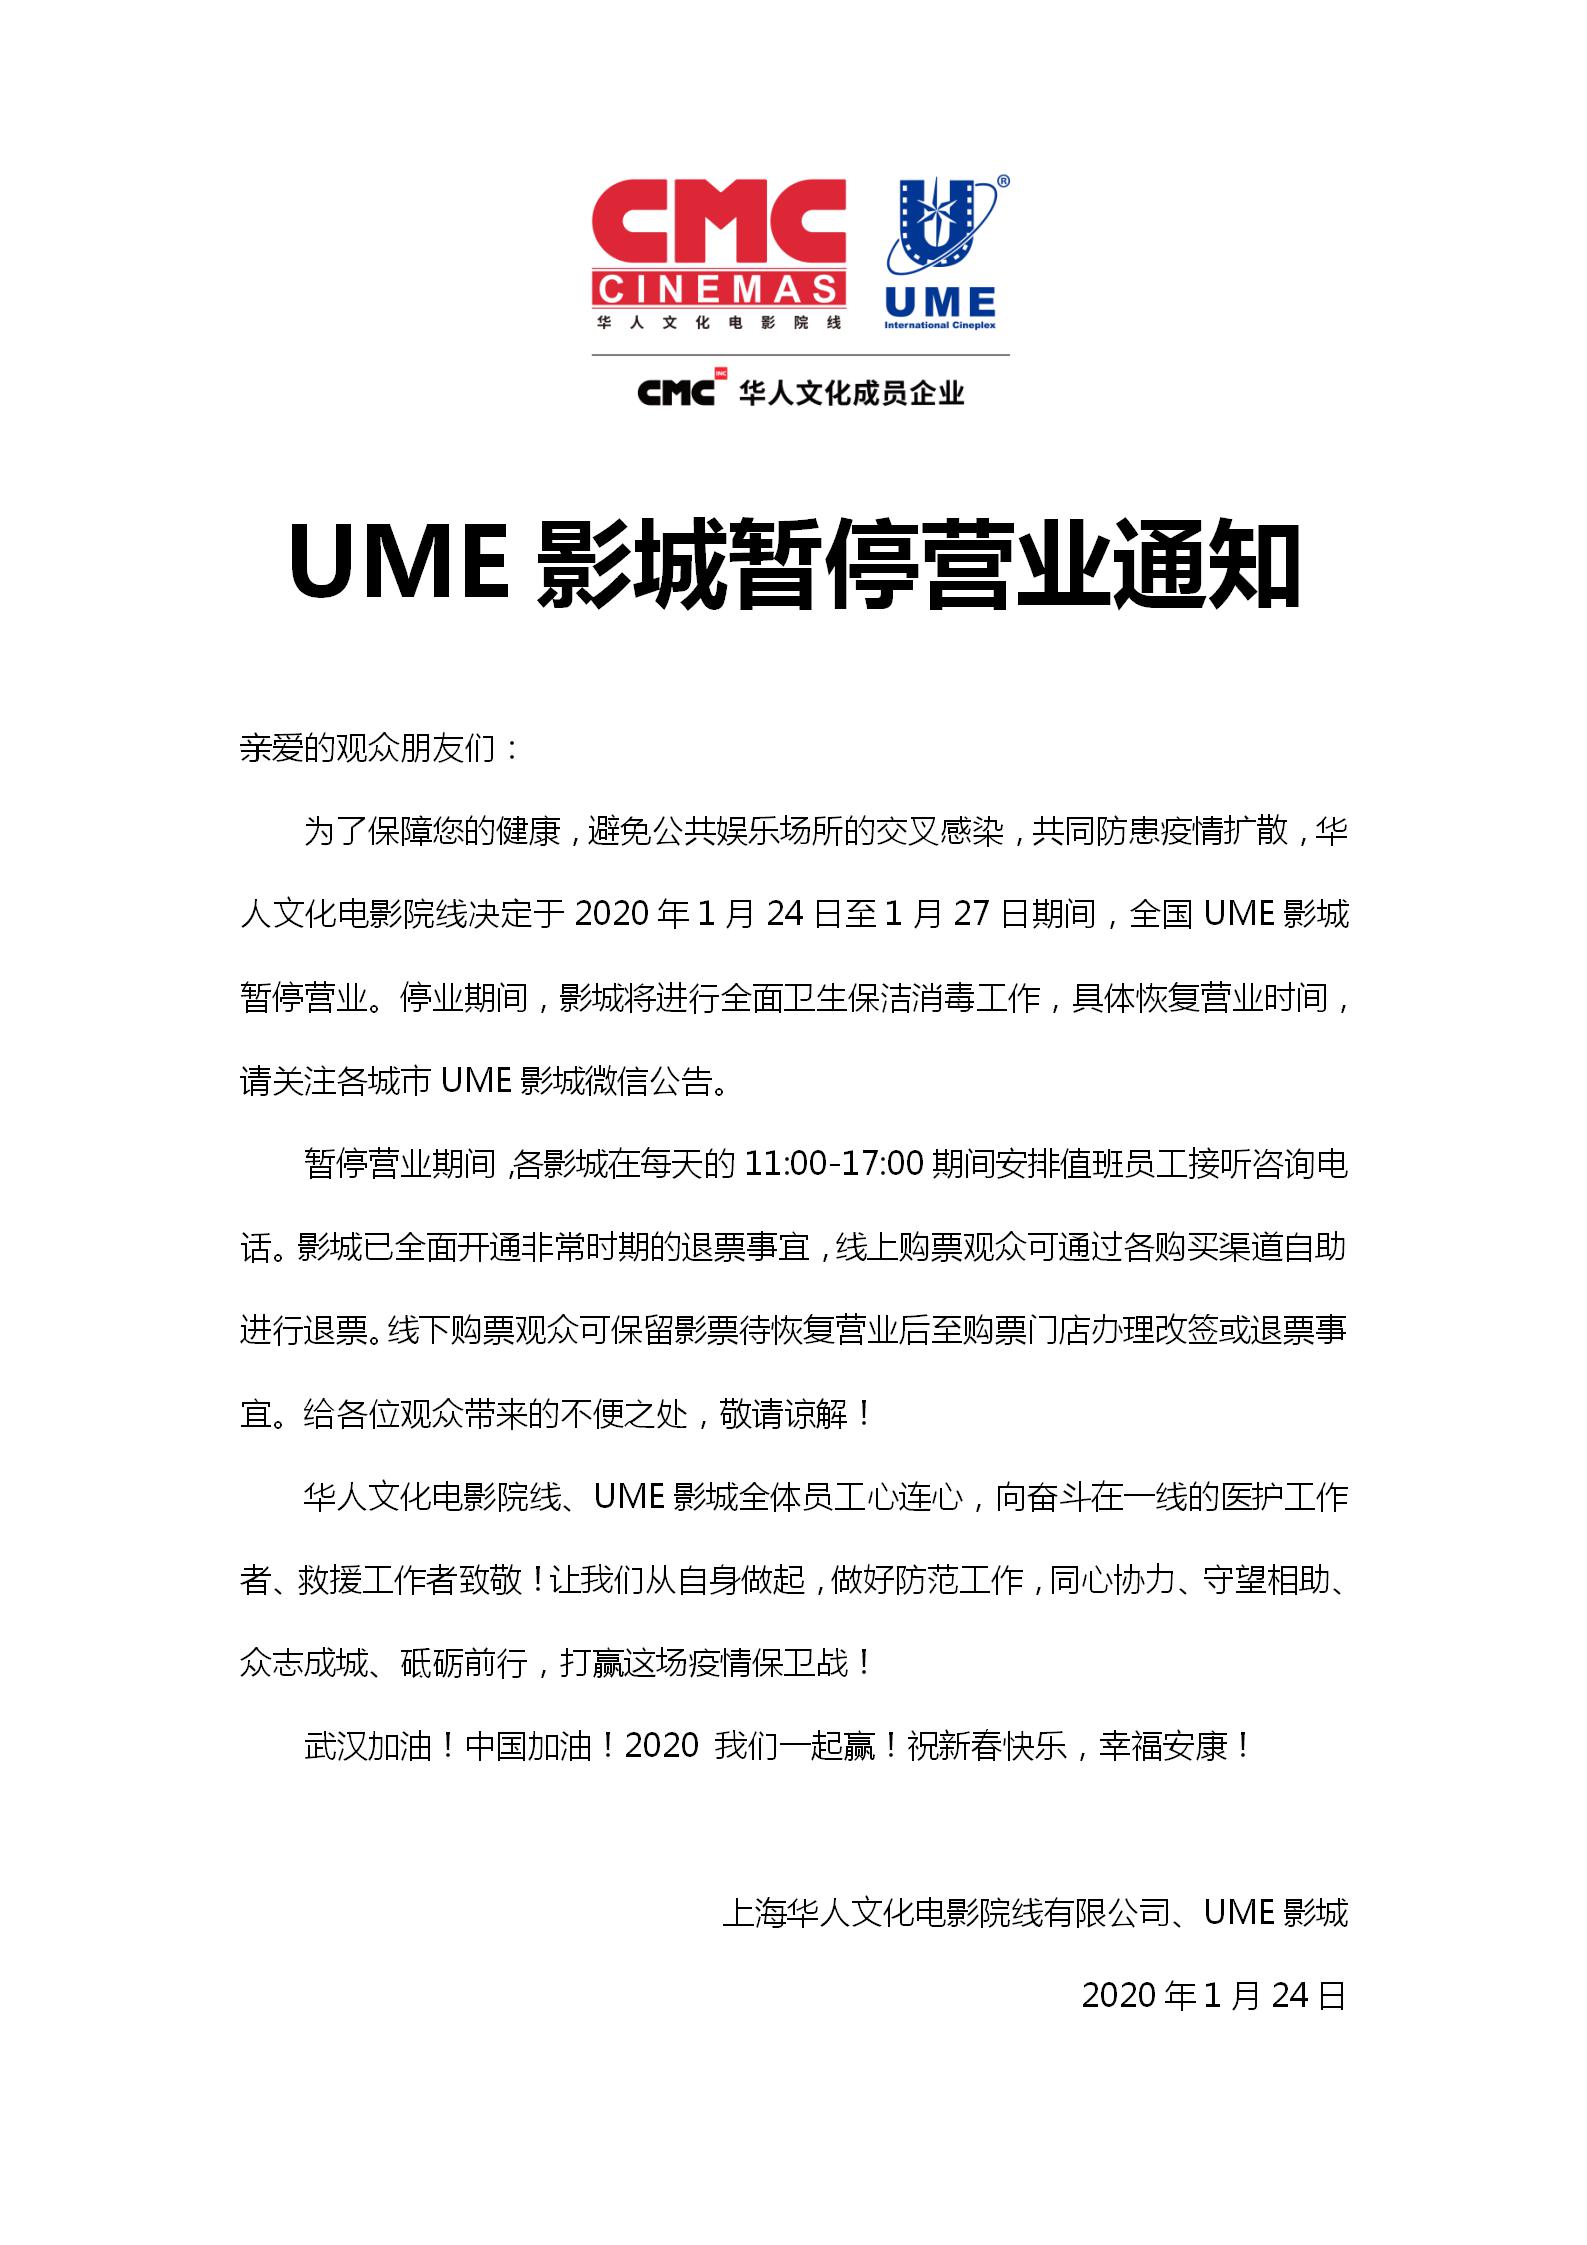 华人文化电影院线、UME影城暂停营业通知定